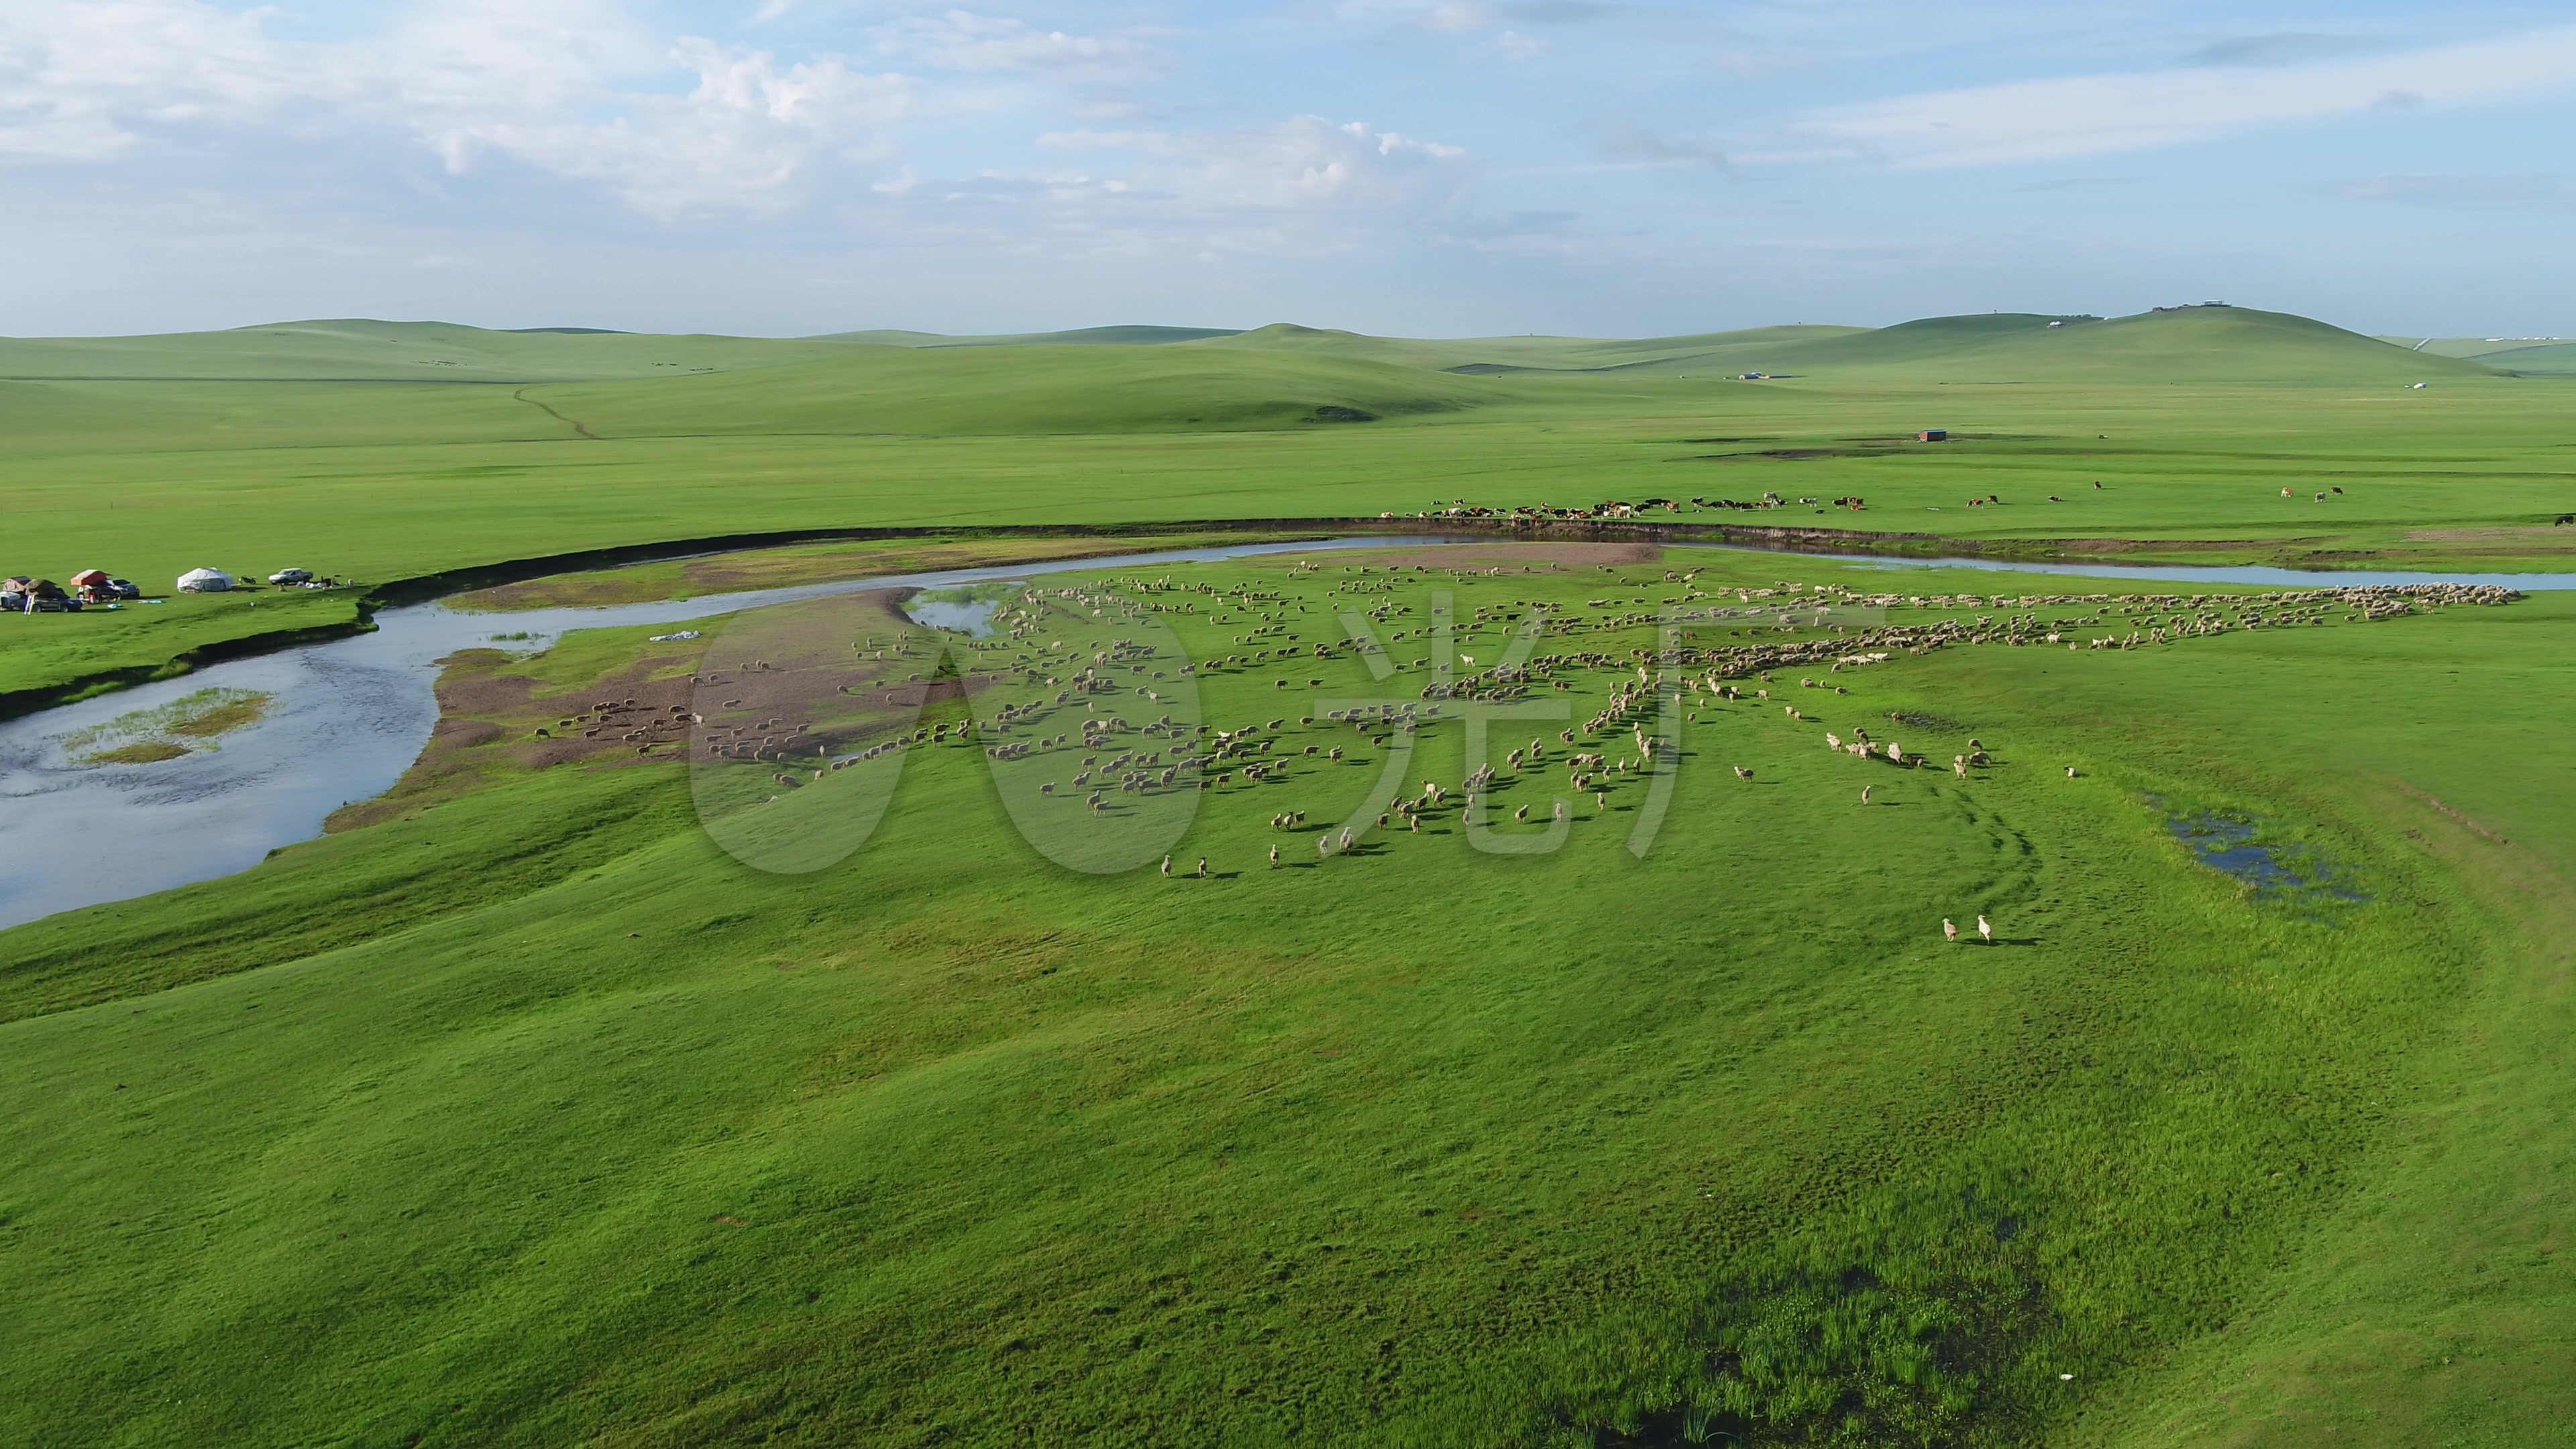 内蒙古大草原放牧牛羊